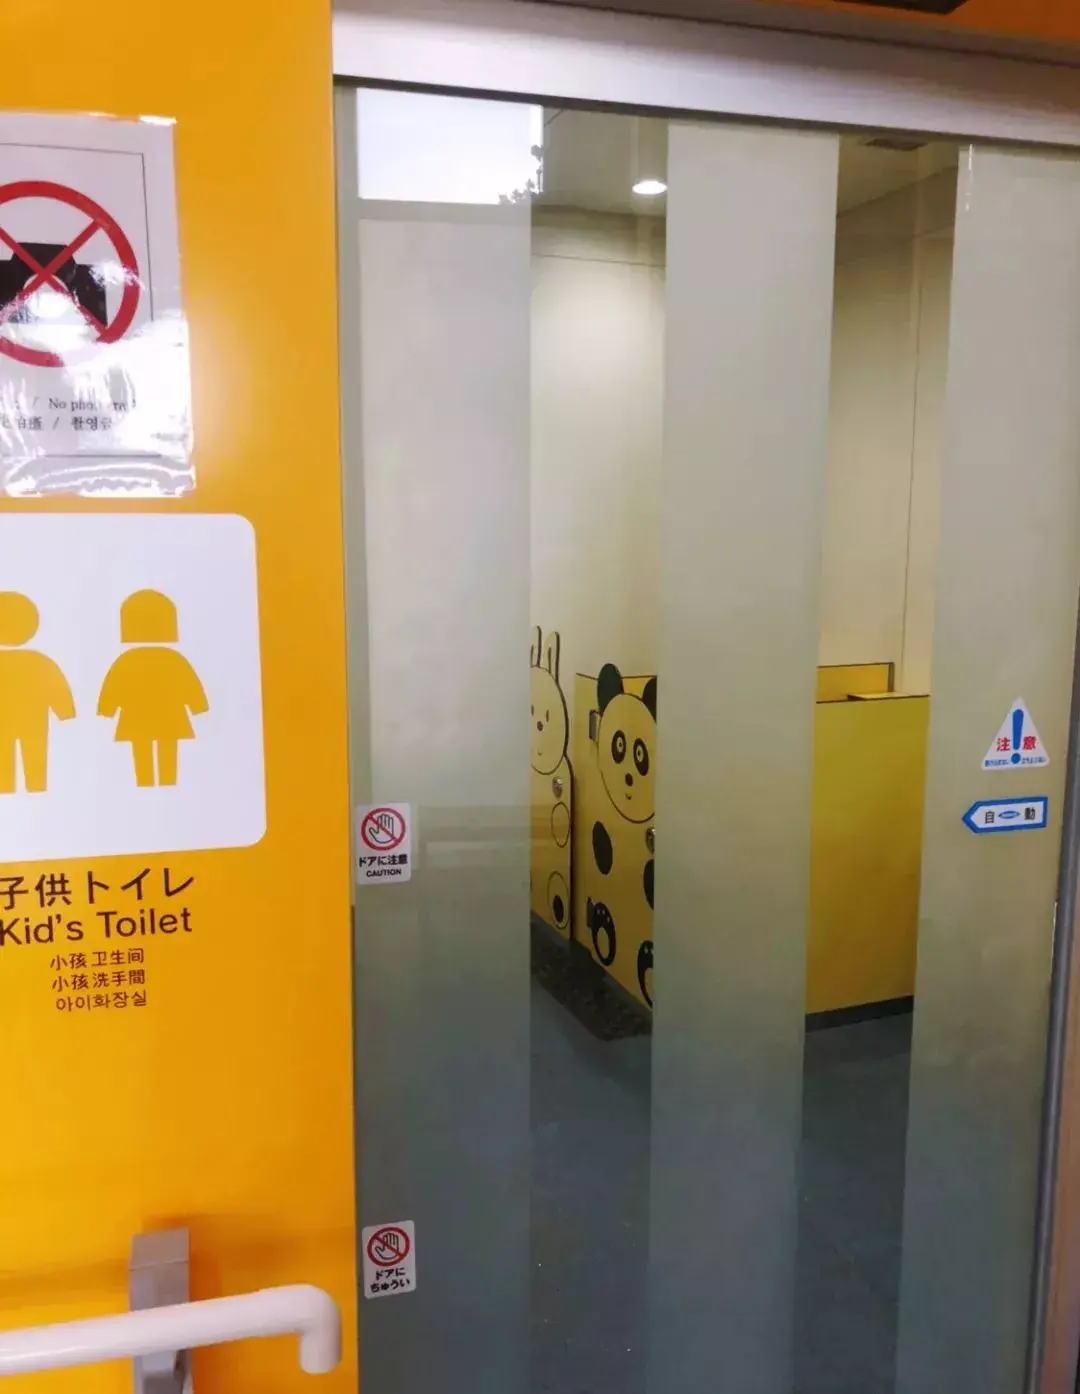 蓝白色世界厕所日手绘小节日节日宣传中文海报 - 模板 - Canva可画